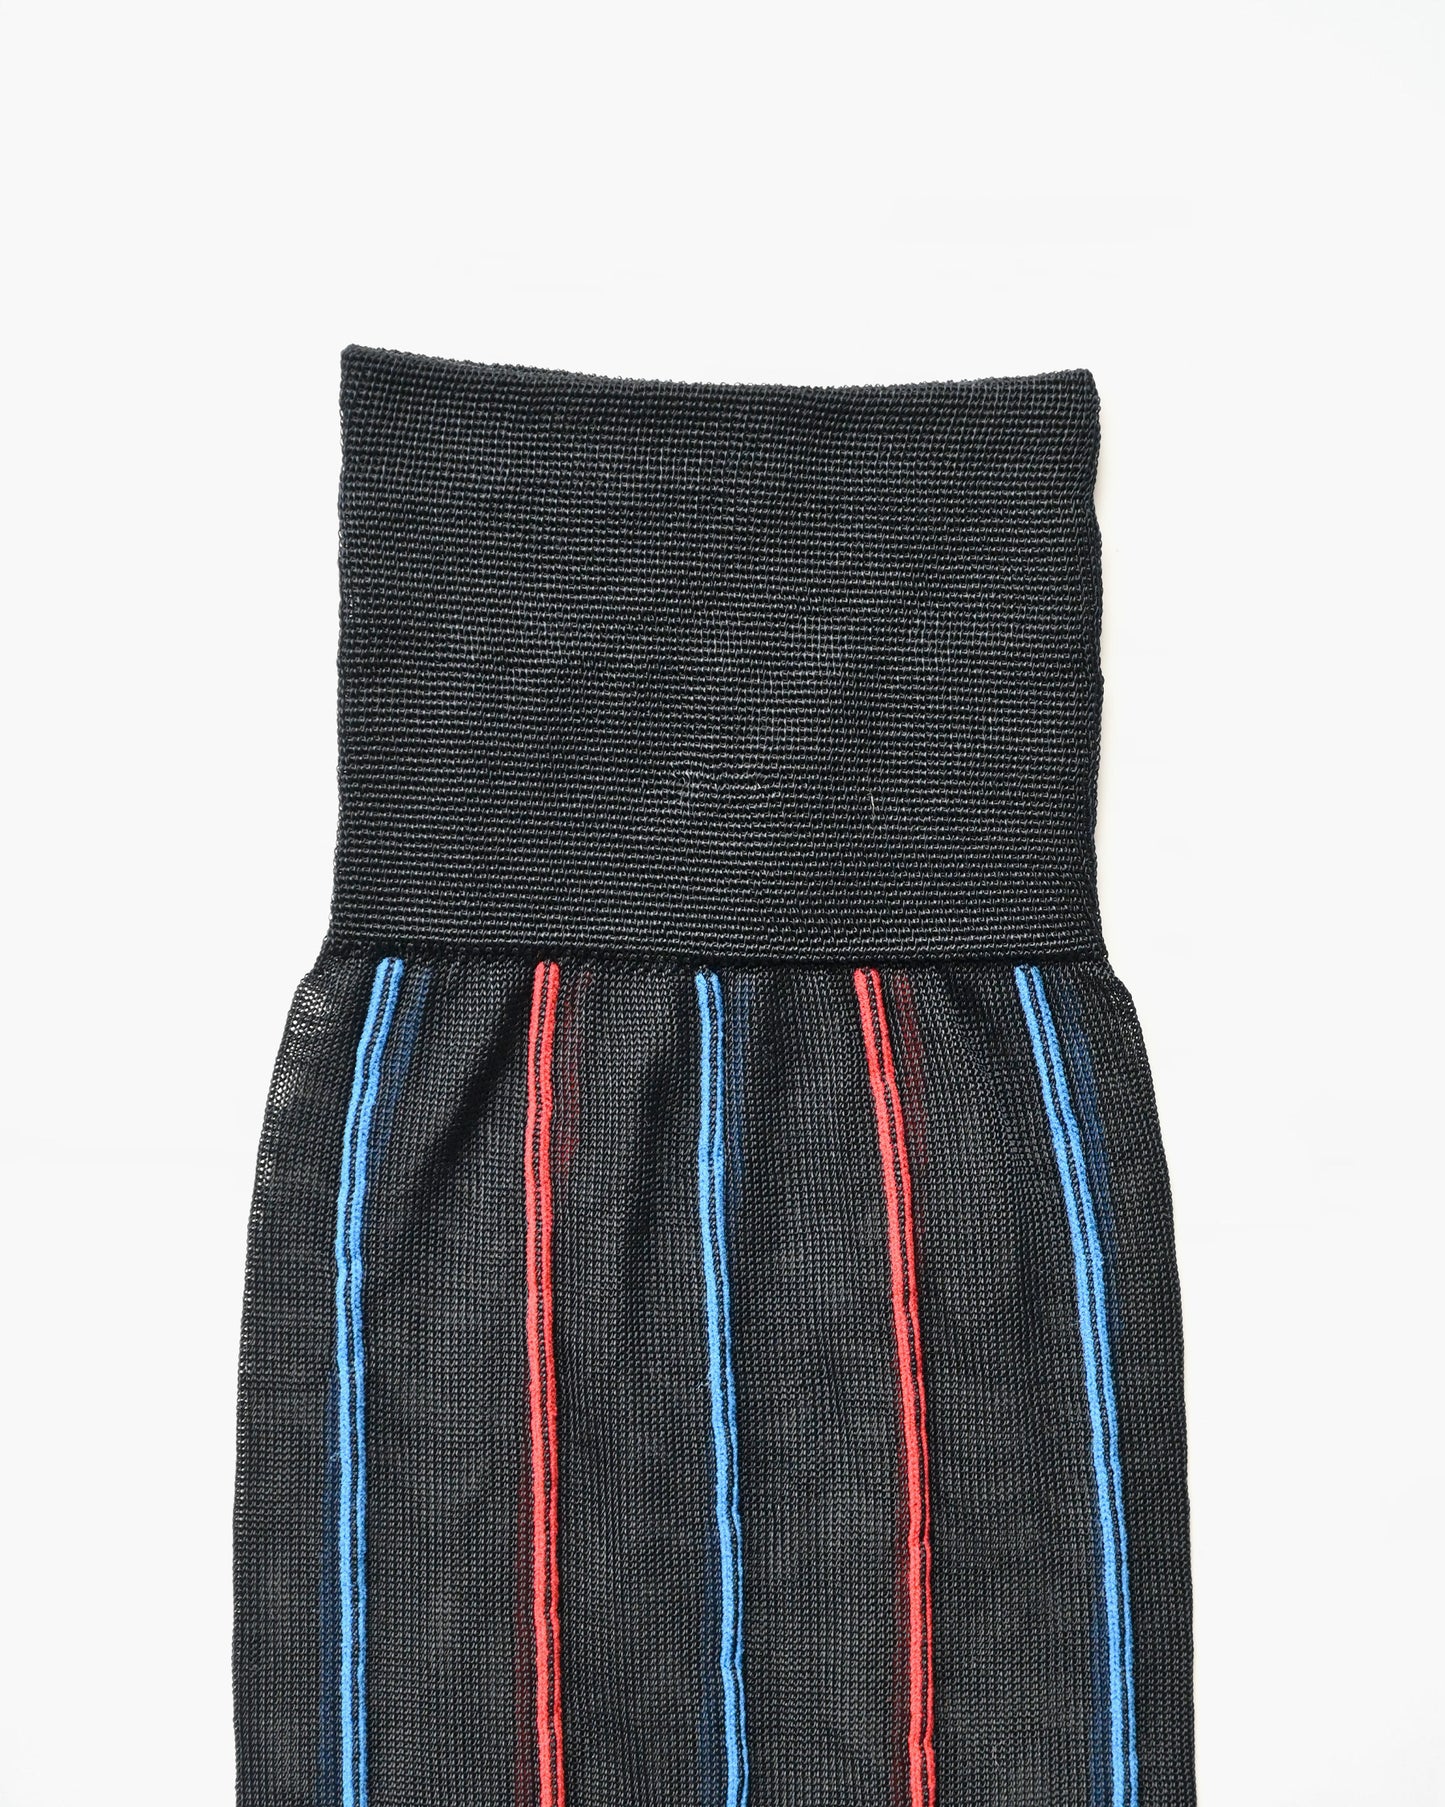 Striped Dress Socks - Black